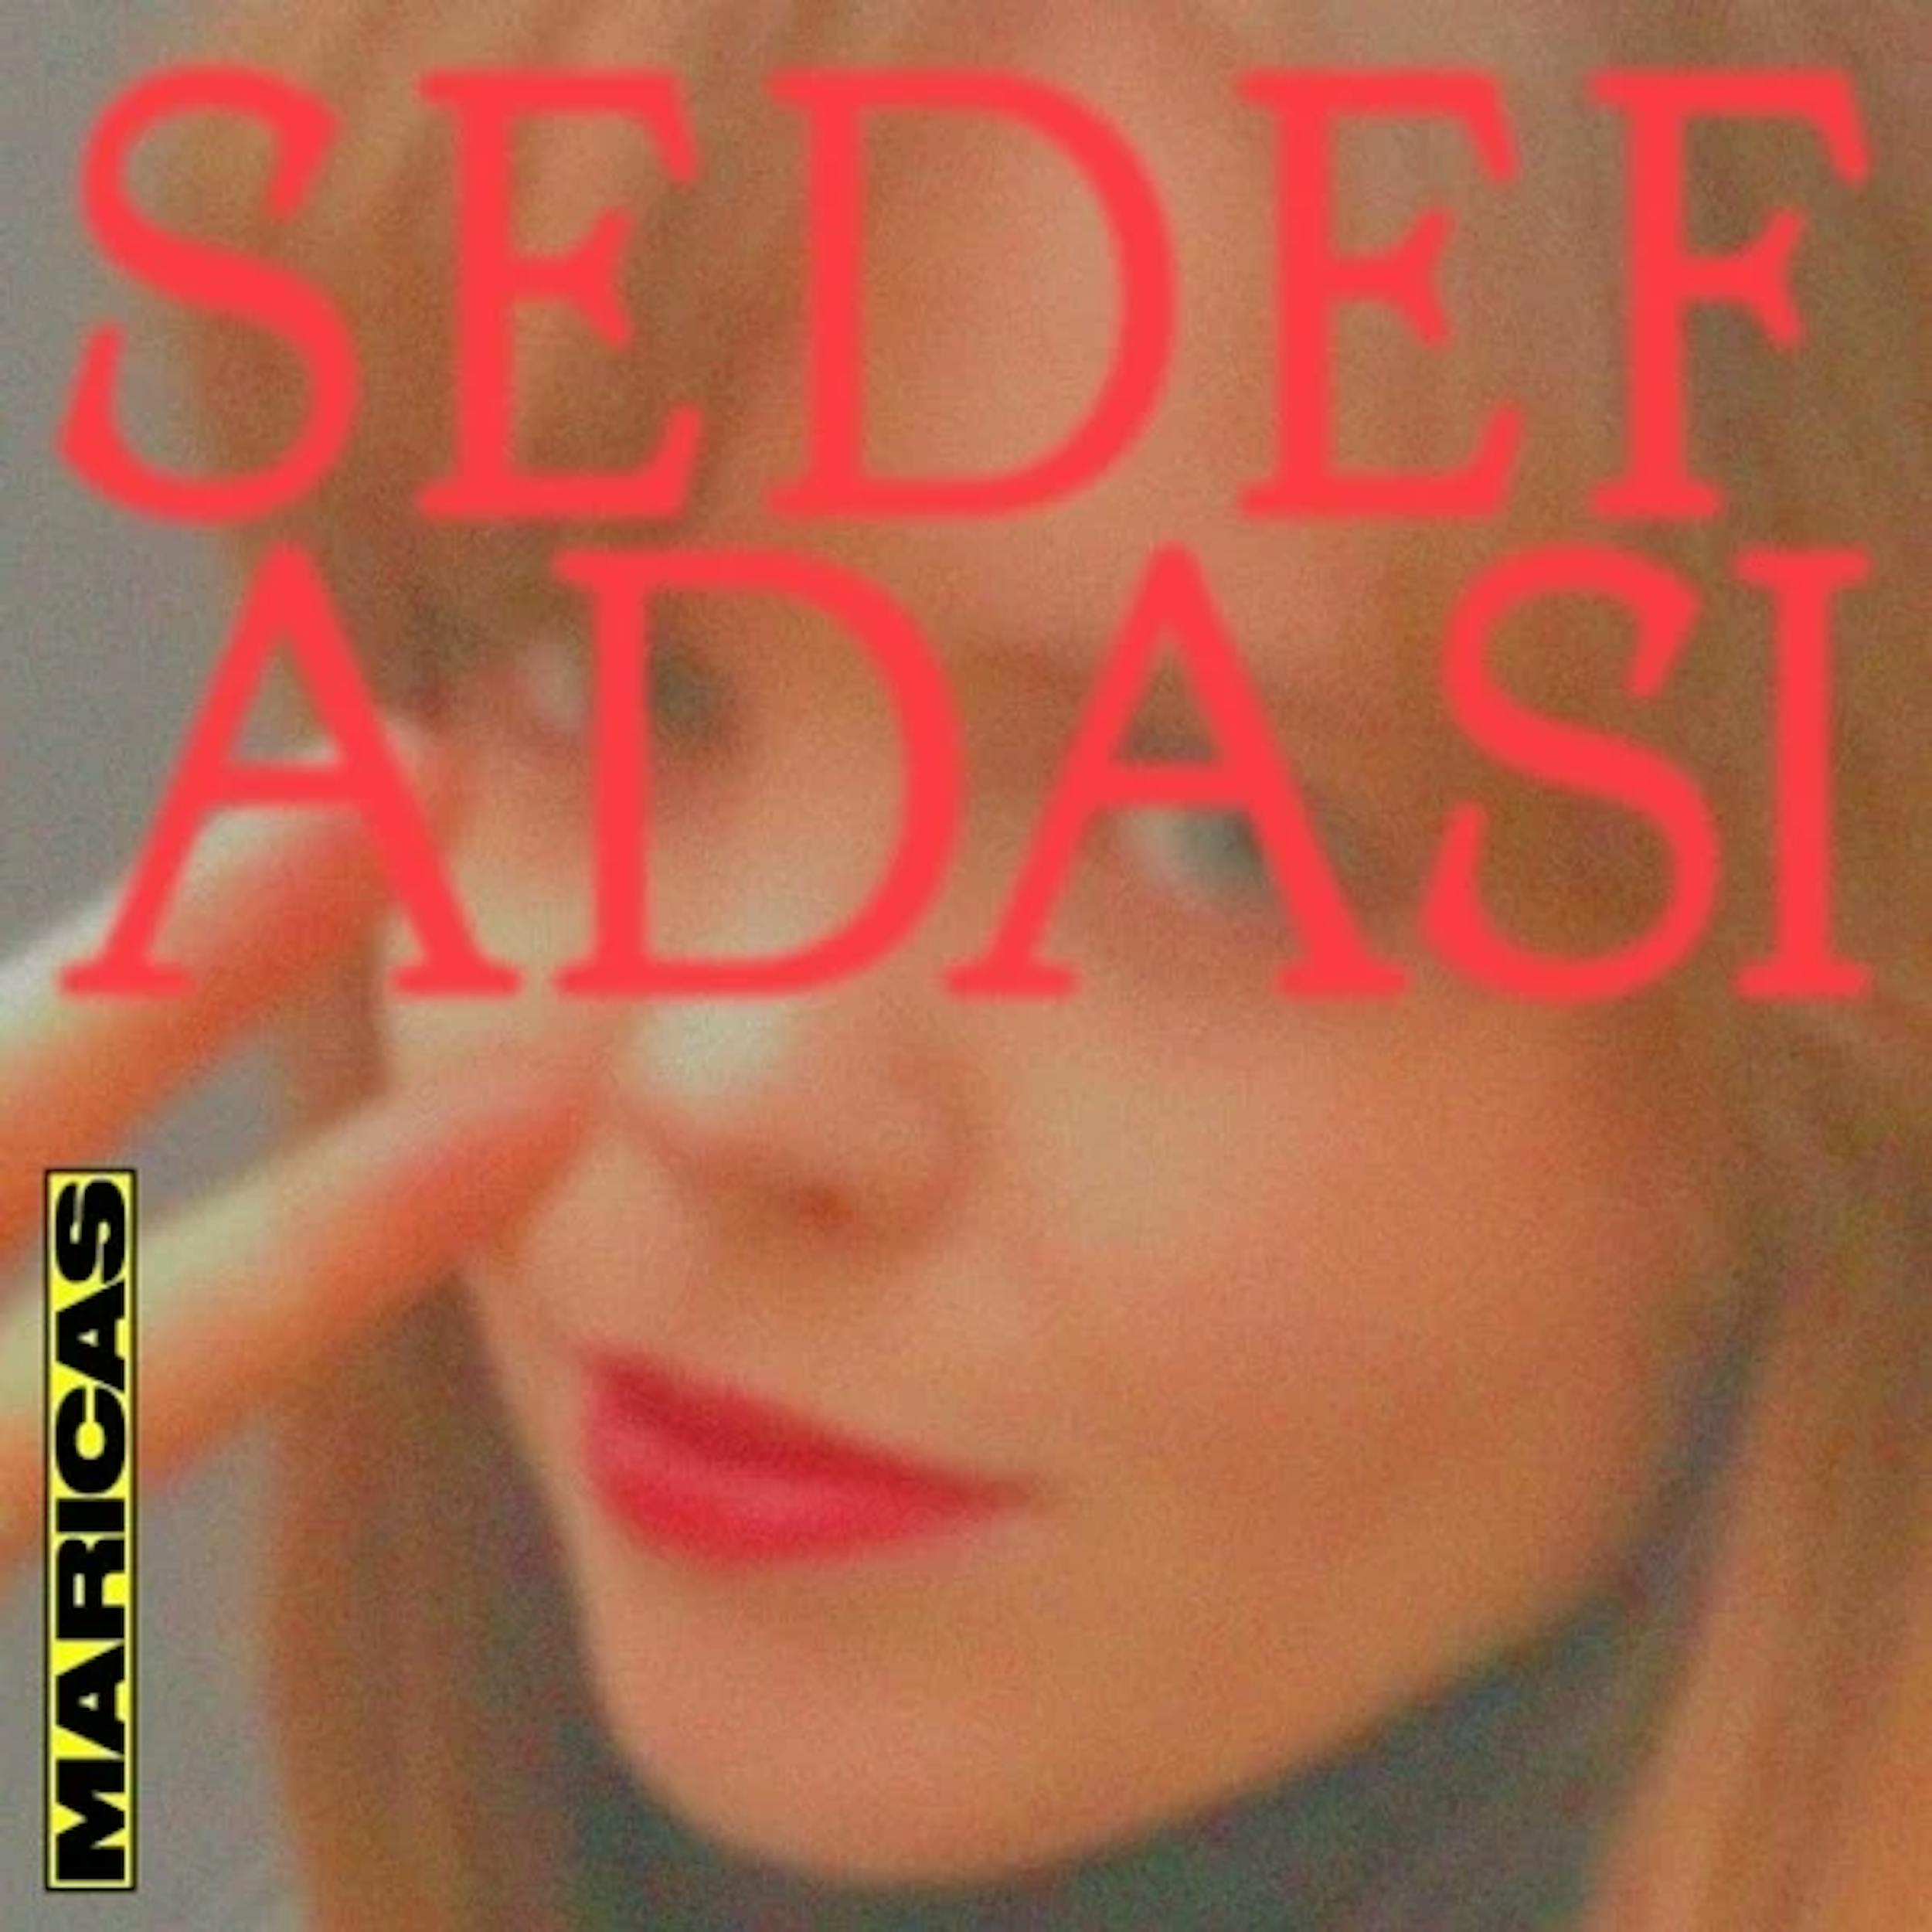 SEDEF ADASI's MARICAS MIX